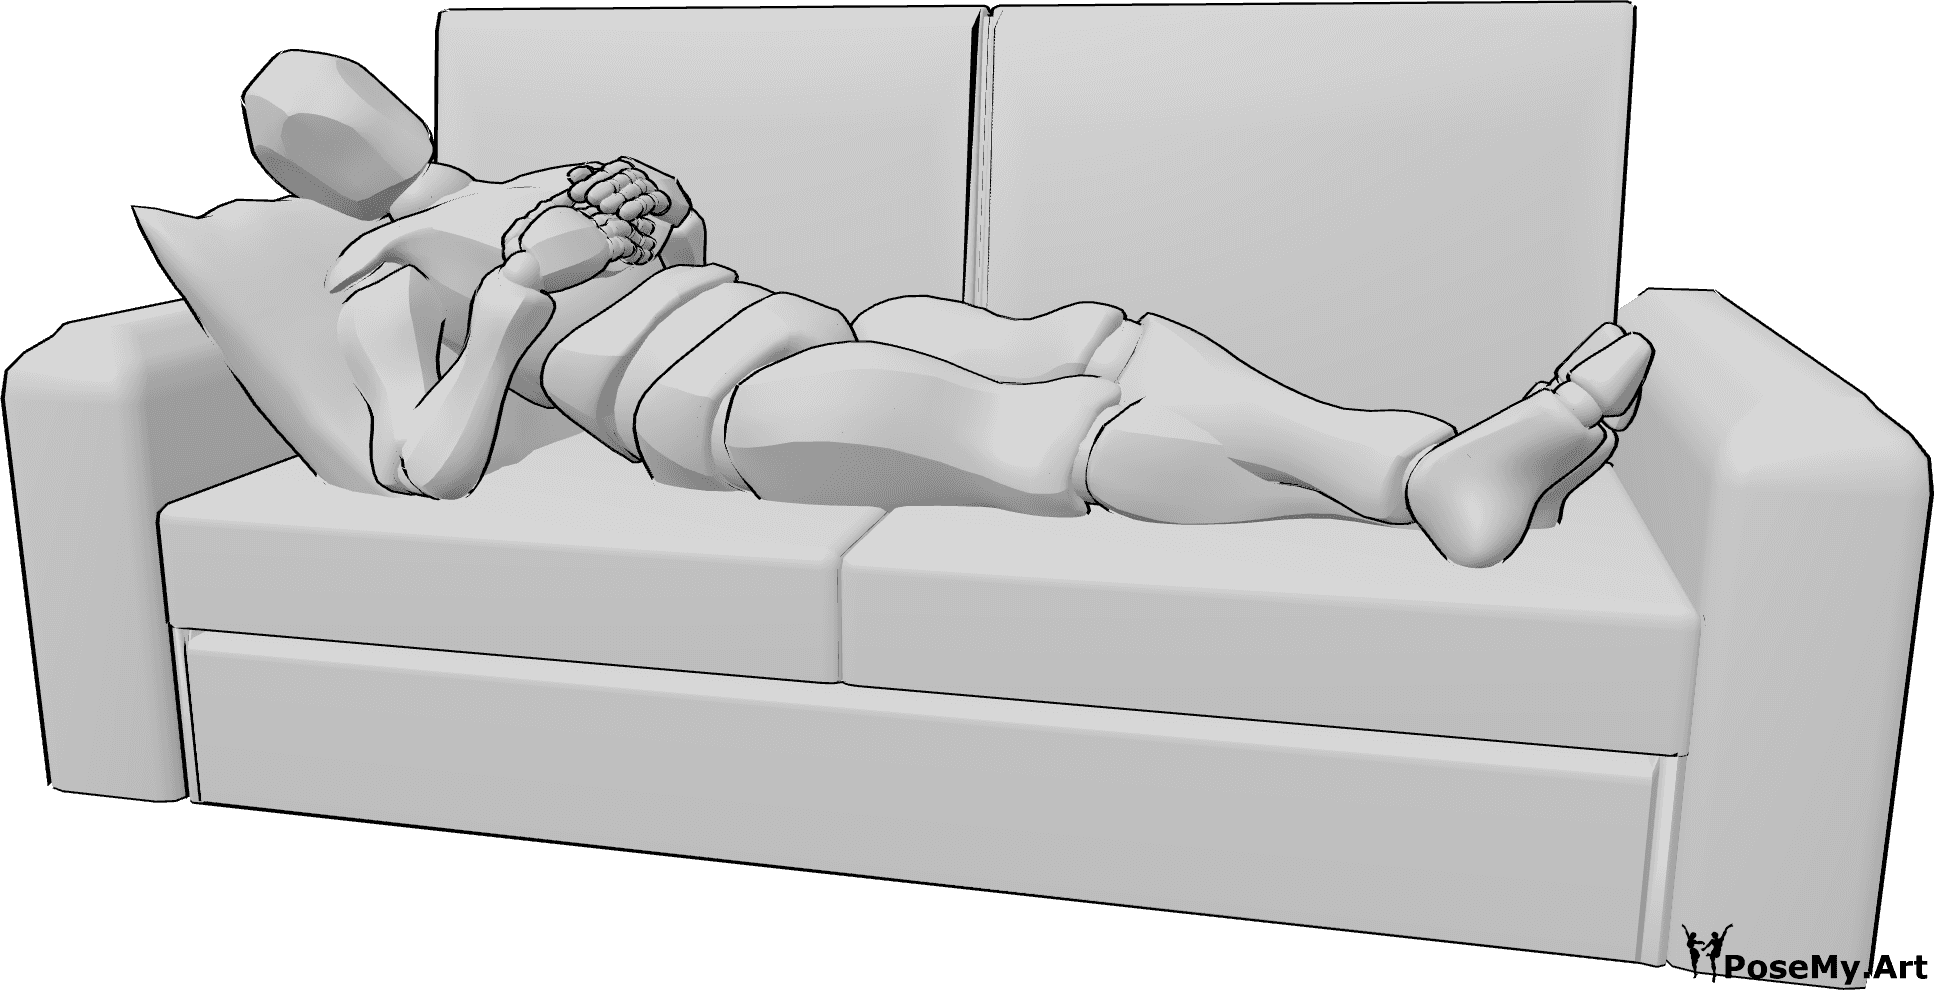 Posen-Referenz- Männliche liegende Couch-Pose - Mann liegt mit gekreuzten Beinen auf der Couch, stützt die Hände auf die Brust und schaut nach rechts